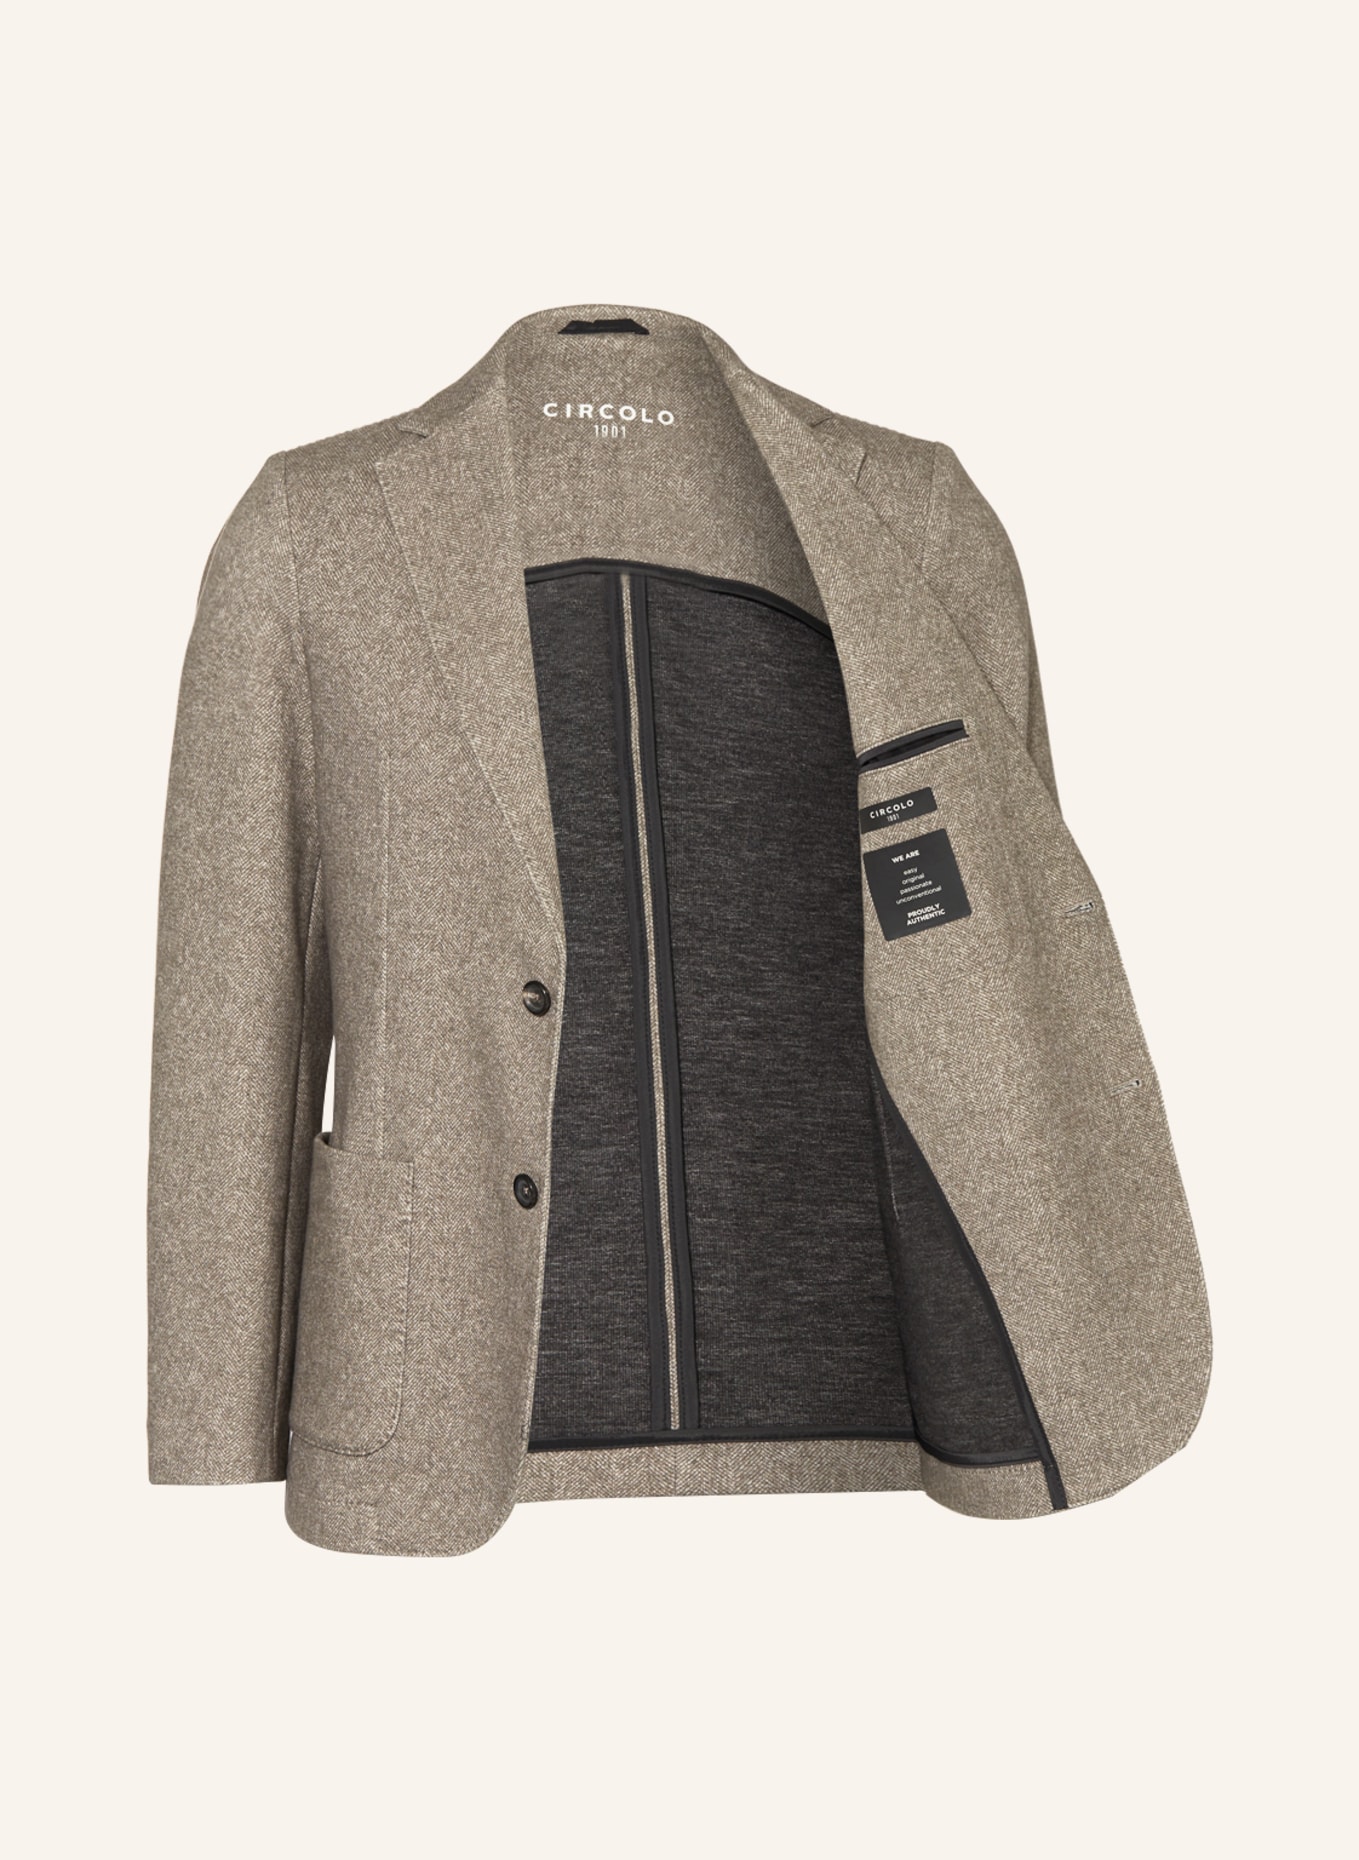 CIRCOLO 1901 Jersey jacket extra slim fit, Color: CORDA CORDA-L (Image 4)